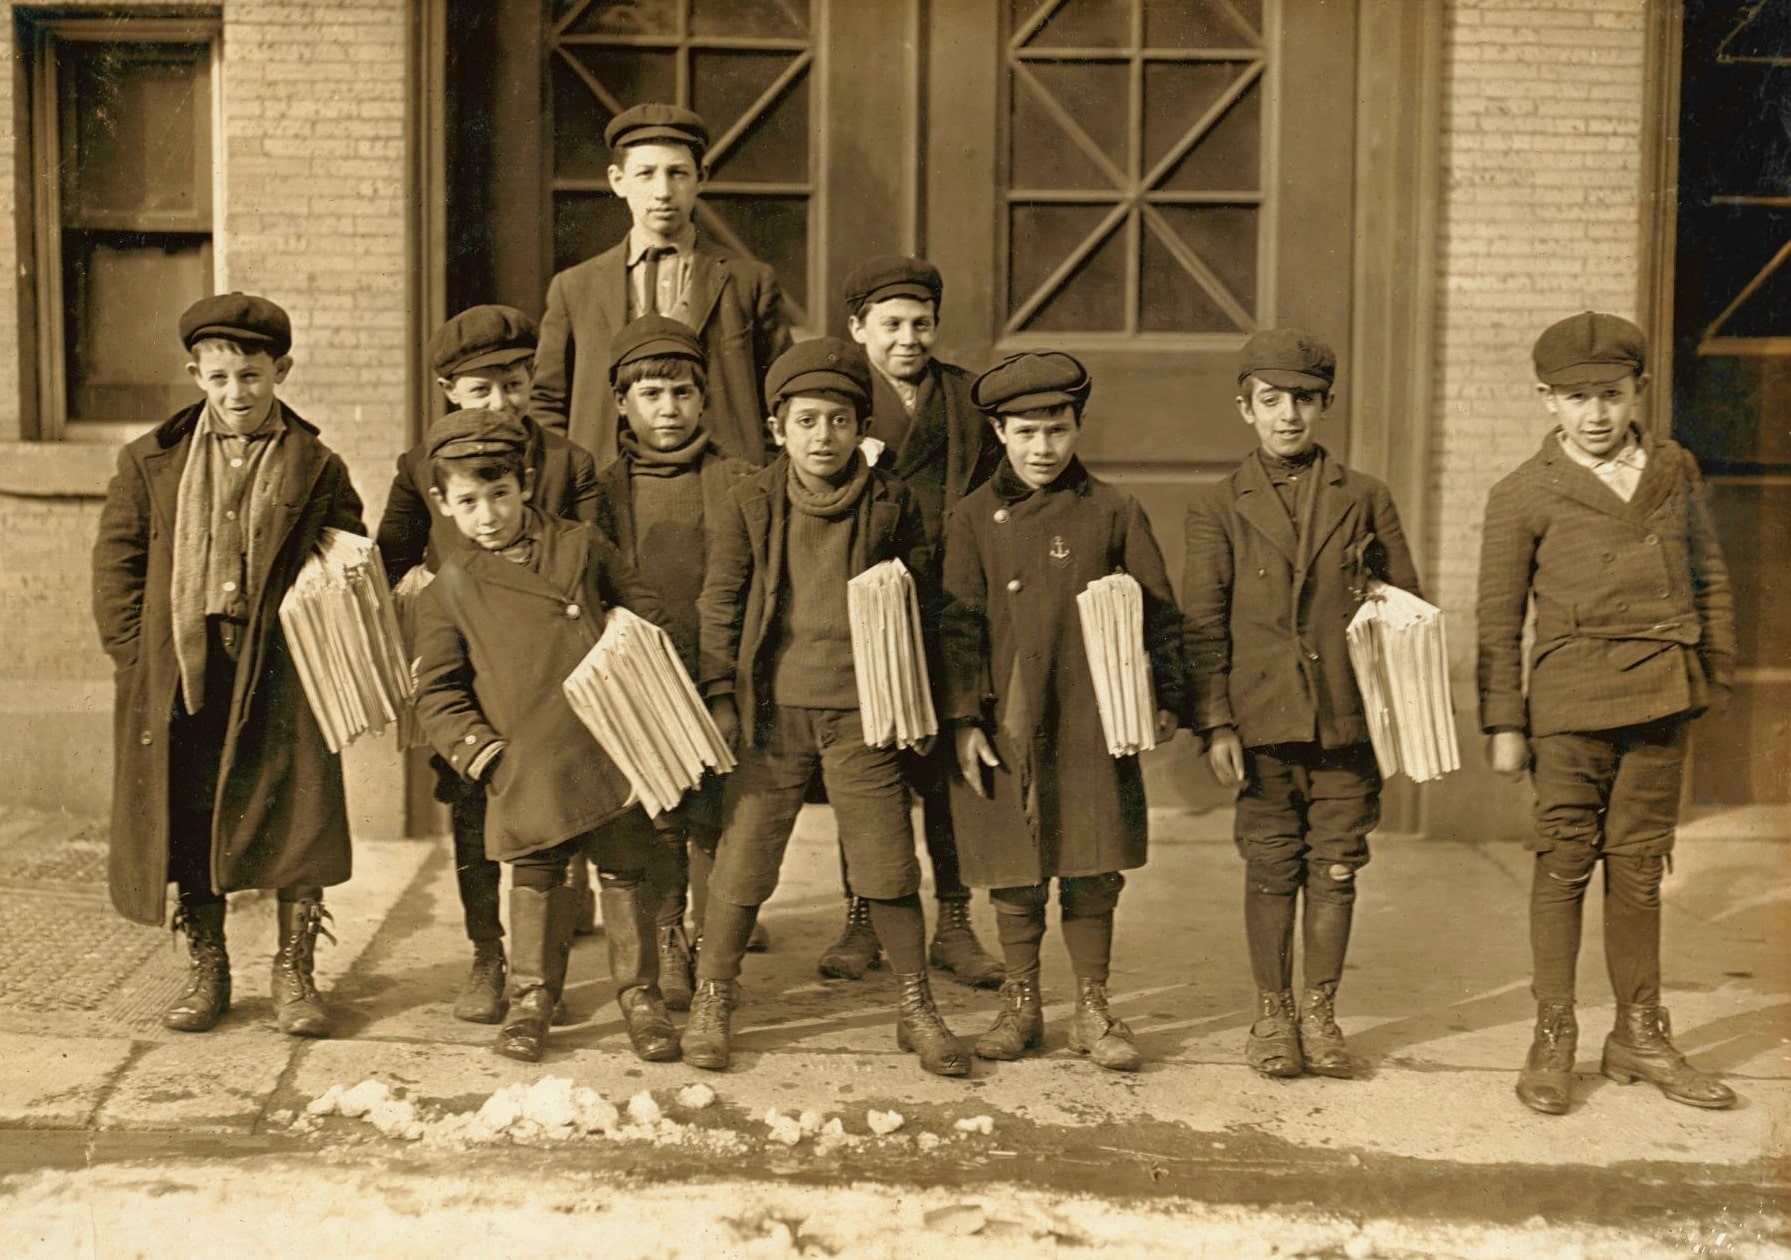   Foto sepia de principios del siglo XX de los repartidores de periódicos en Connecticut